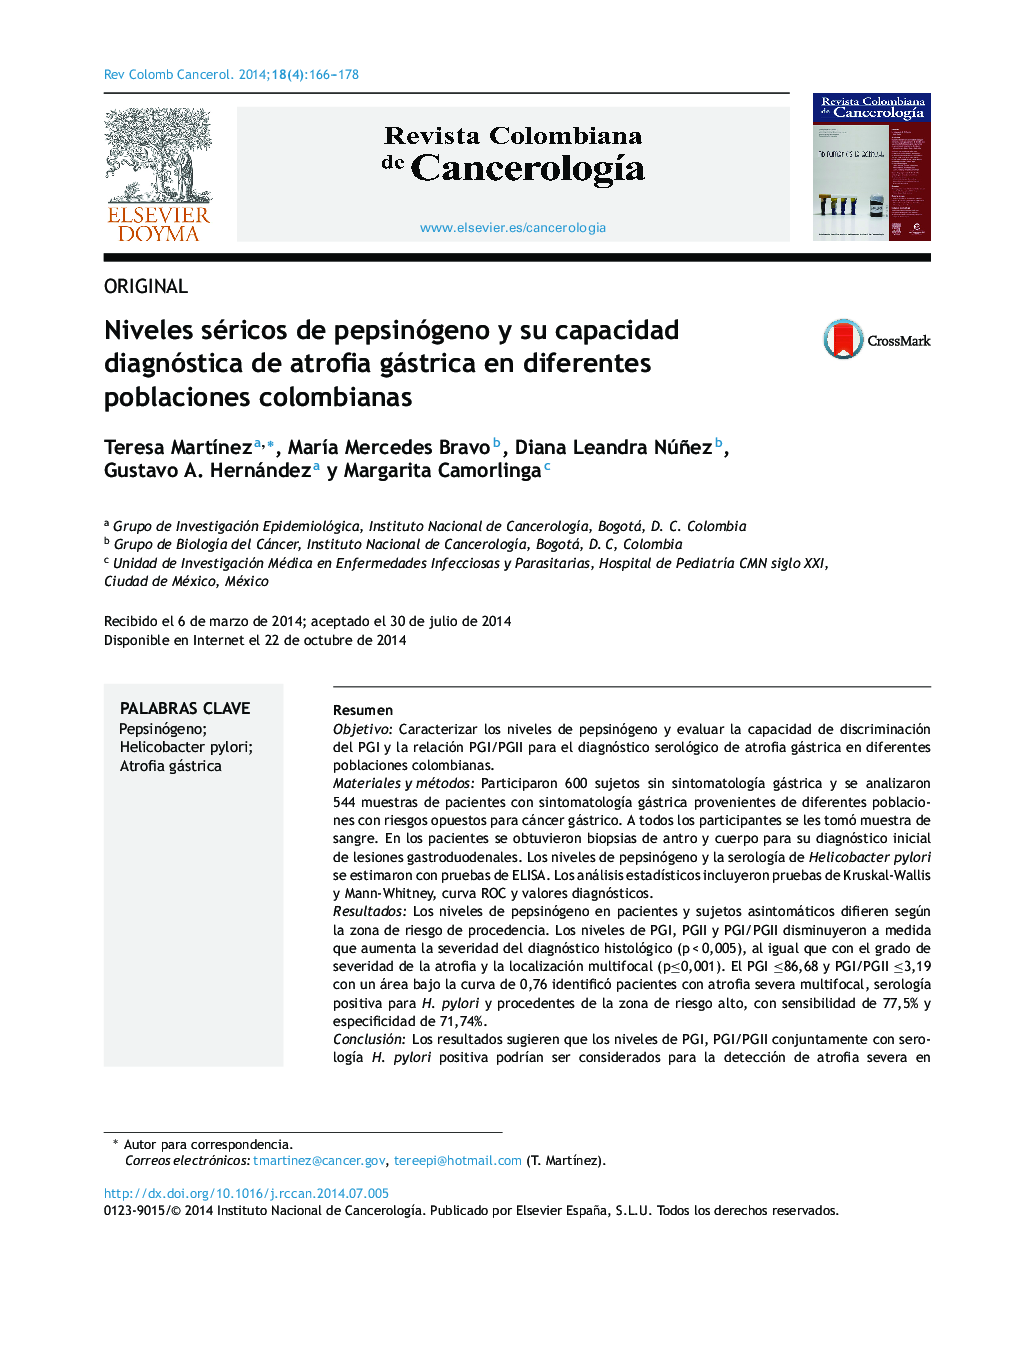 Niveles séricos de pepsinógeno y su capacidad diagnóstica de atrofia gástrica en diferentes poblaciones colombianas